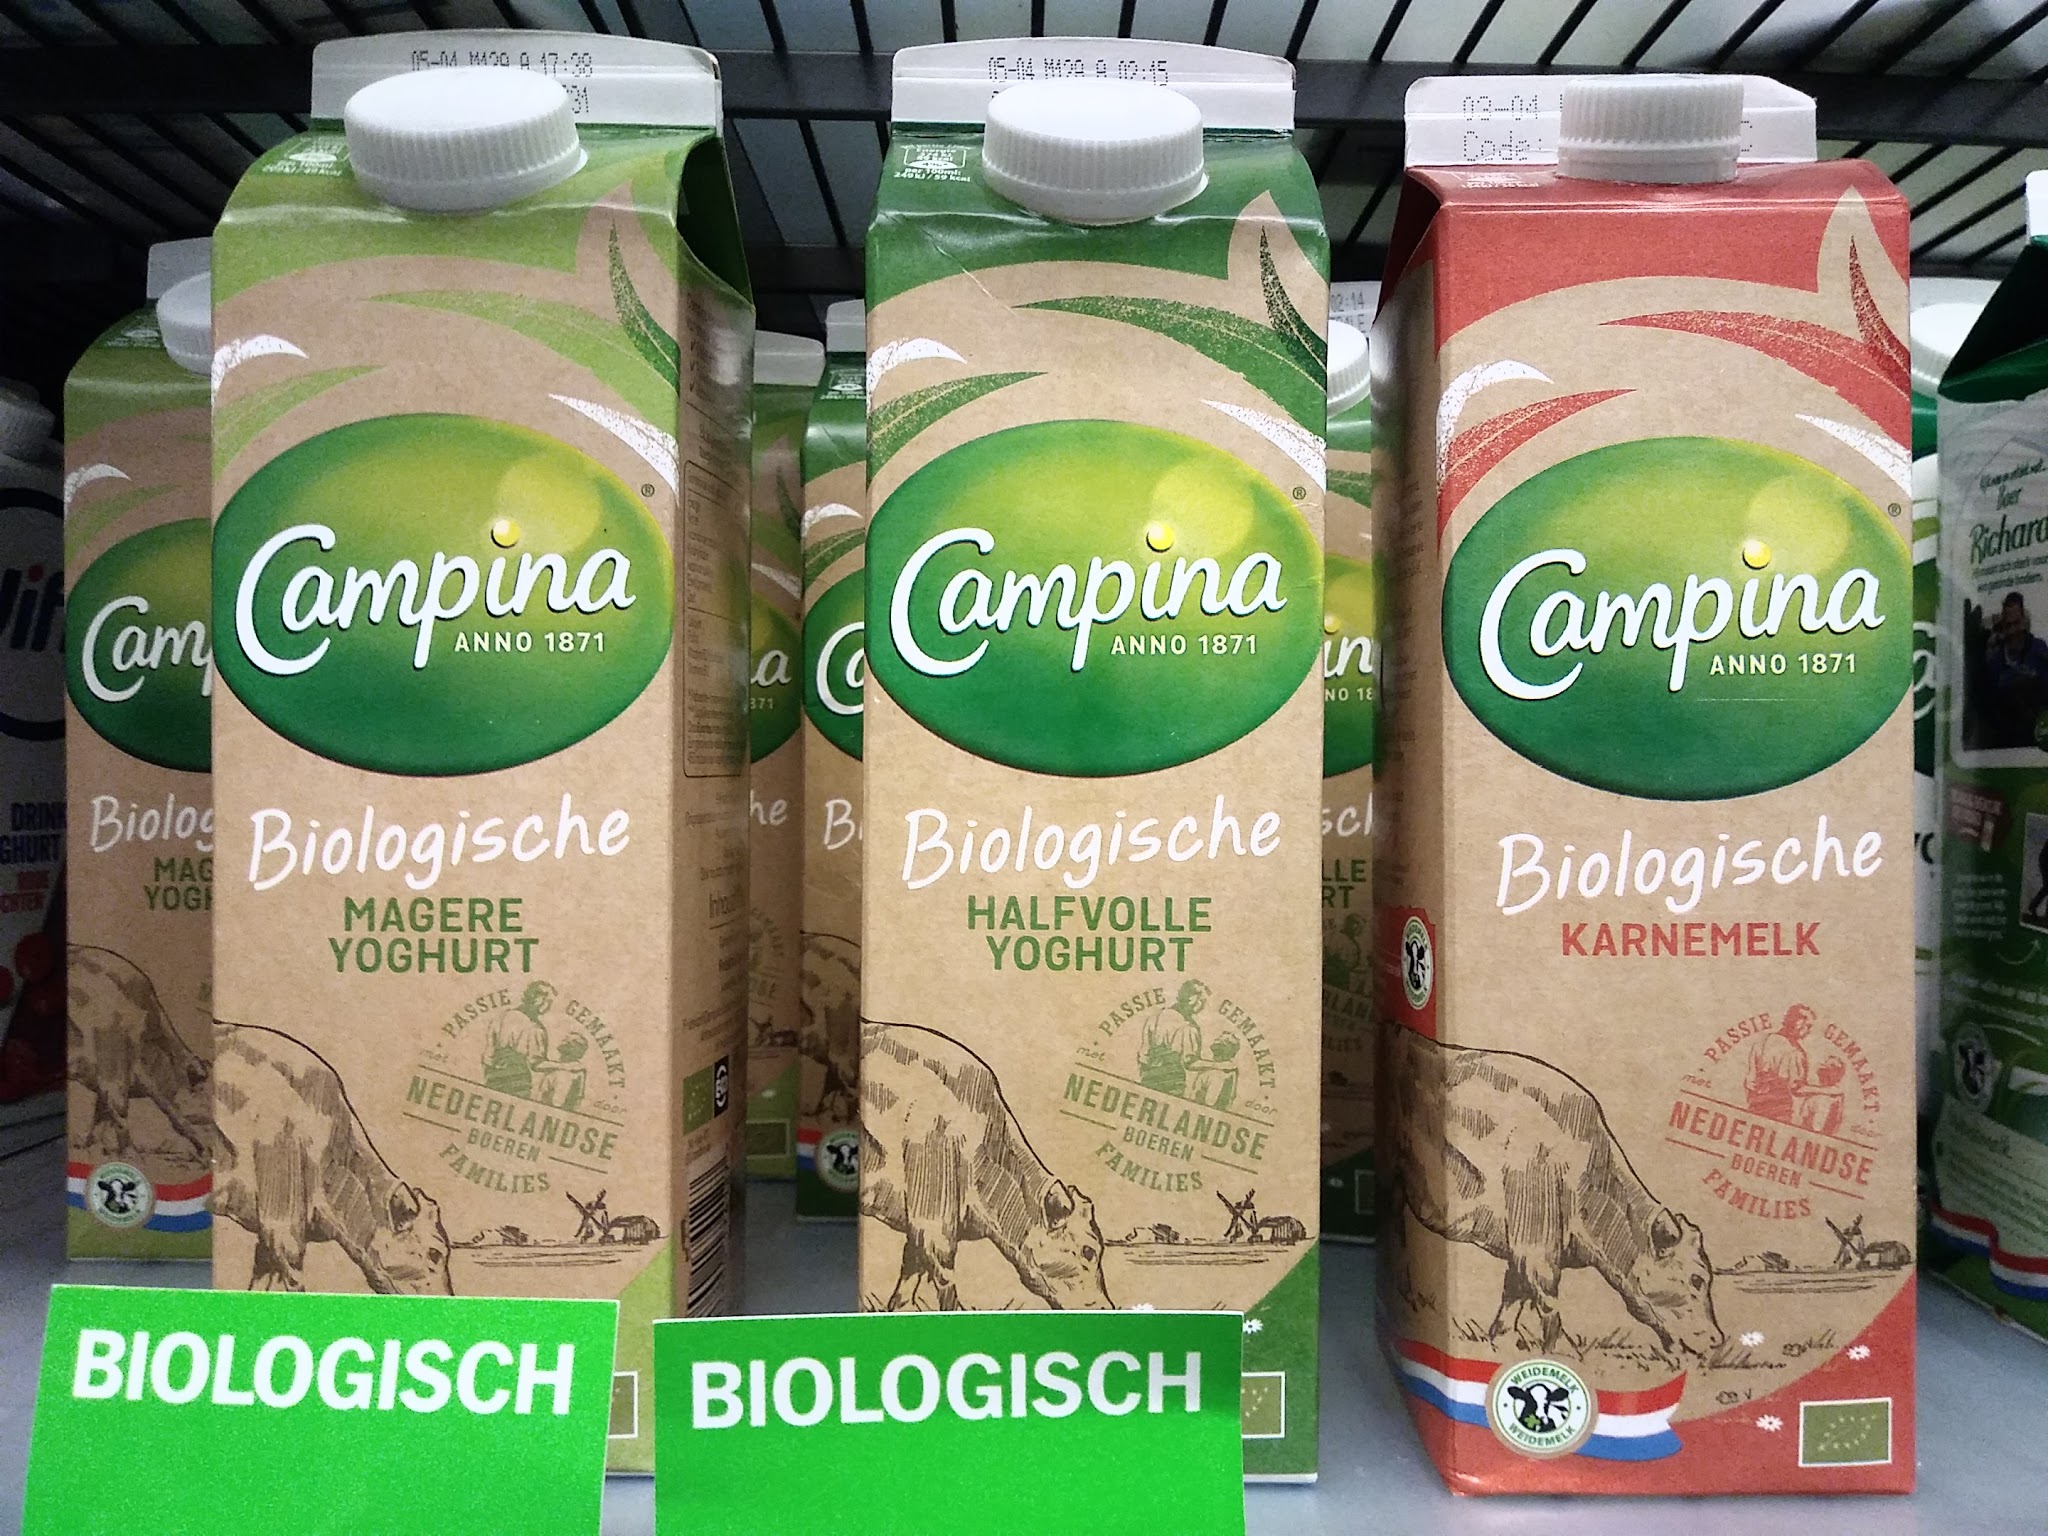 Fahrenheit Sympton toewijding FrieslandCampina trekt oud merk nieuw biologisch jasje aan - Foodlog